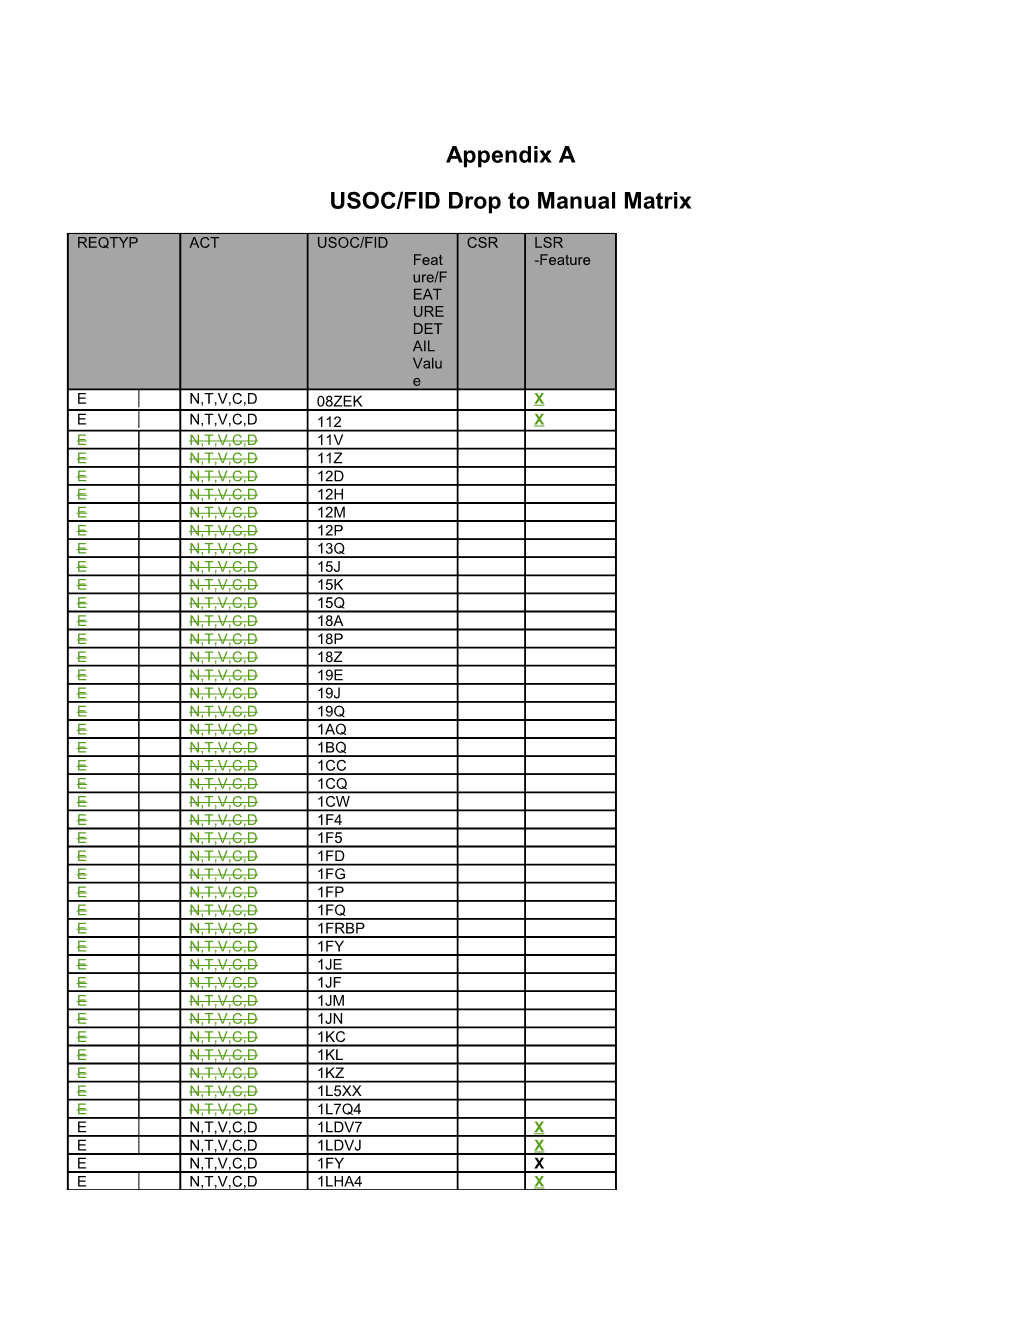 USOC/FID Drop to Manual Matrix